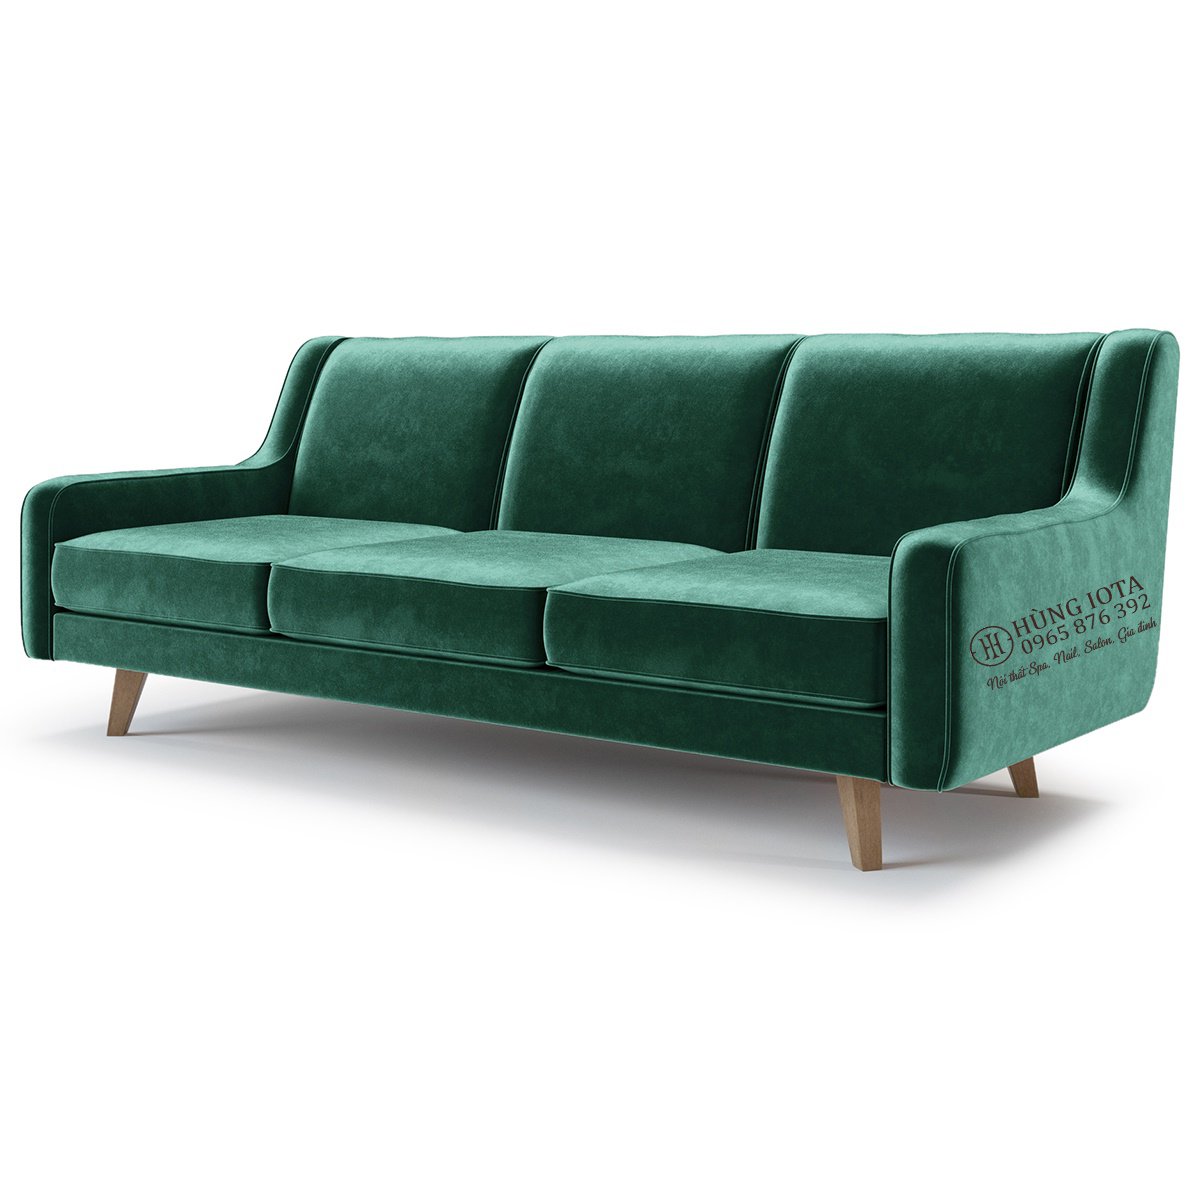 Ghế sofa bọc nhung màu xanh lá